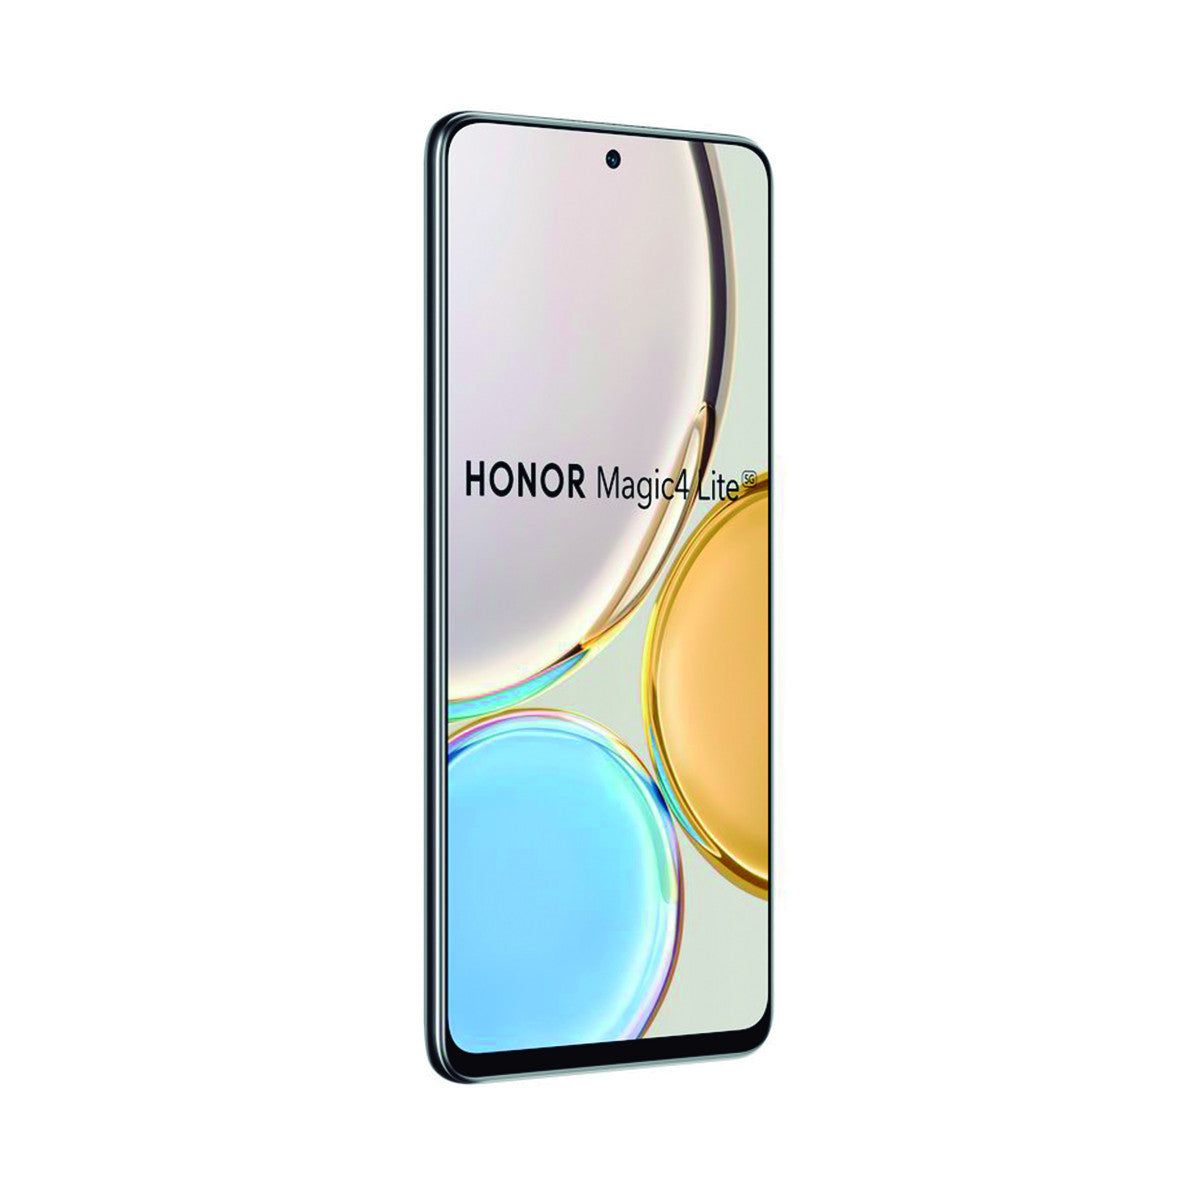 Honor Magic4 Lite 5G 6GB/128GB Negro (Midnight Black) Dual SIM ANY-NX1 Smartphone | Honor